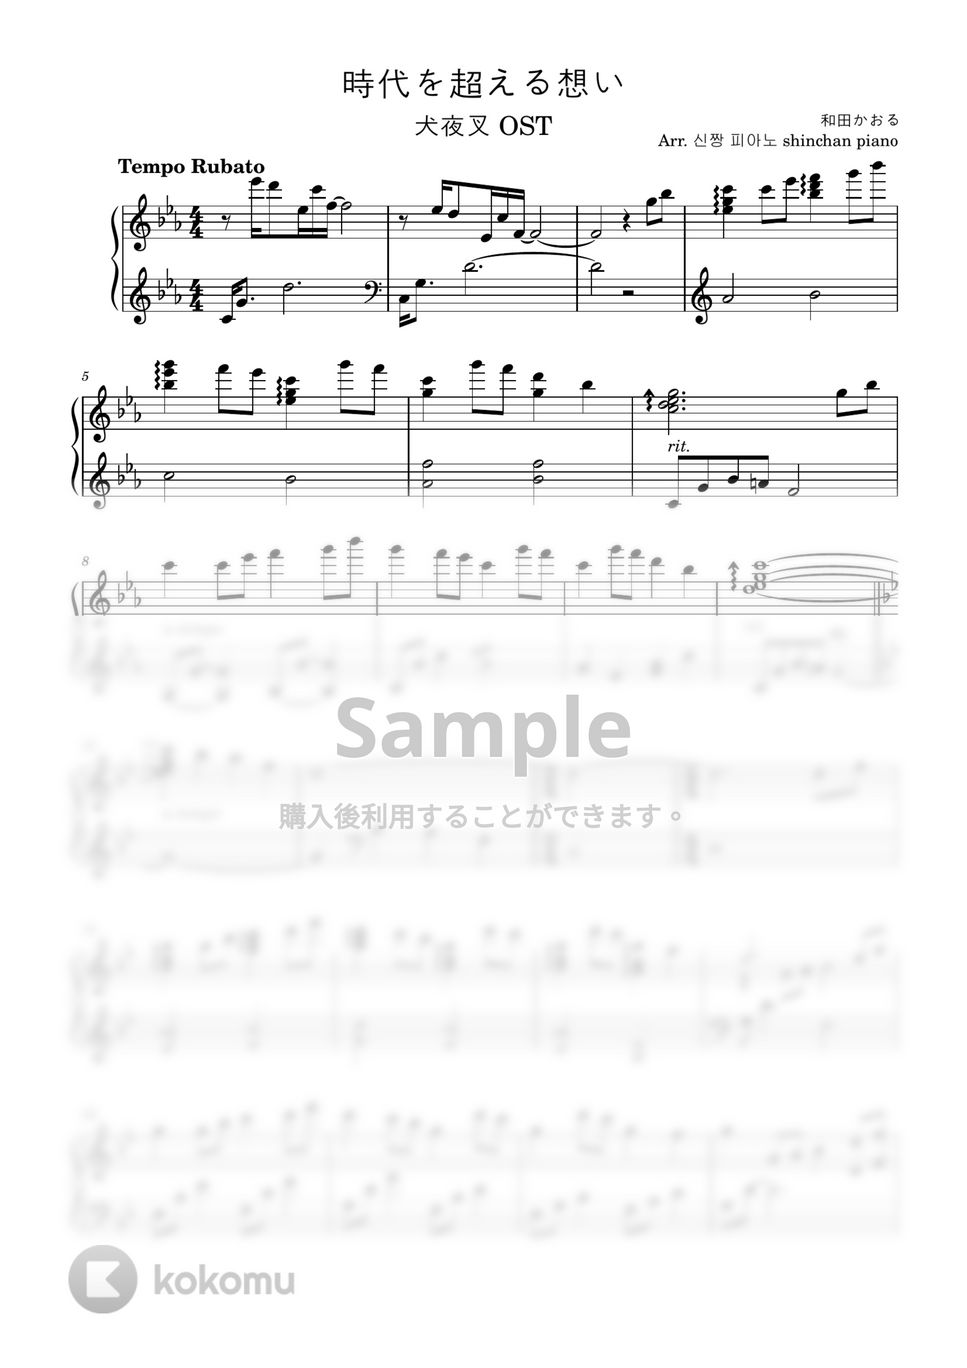 わだかおる - 時代を超える想い (犬夜叉ost) by 신짱 피아노 shinchan piano